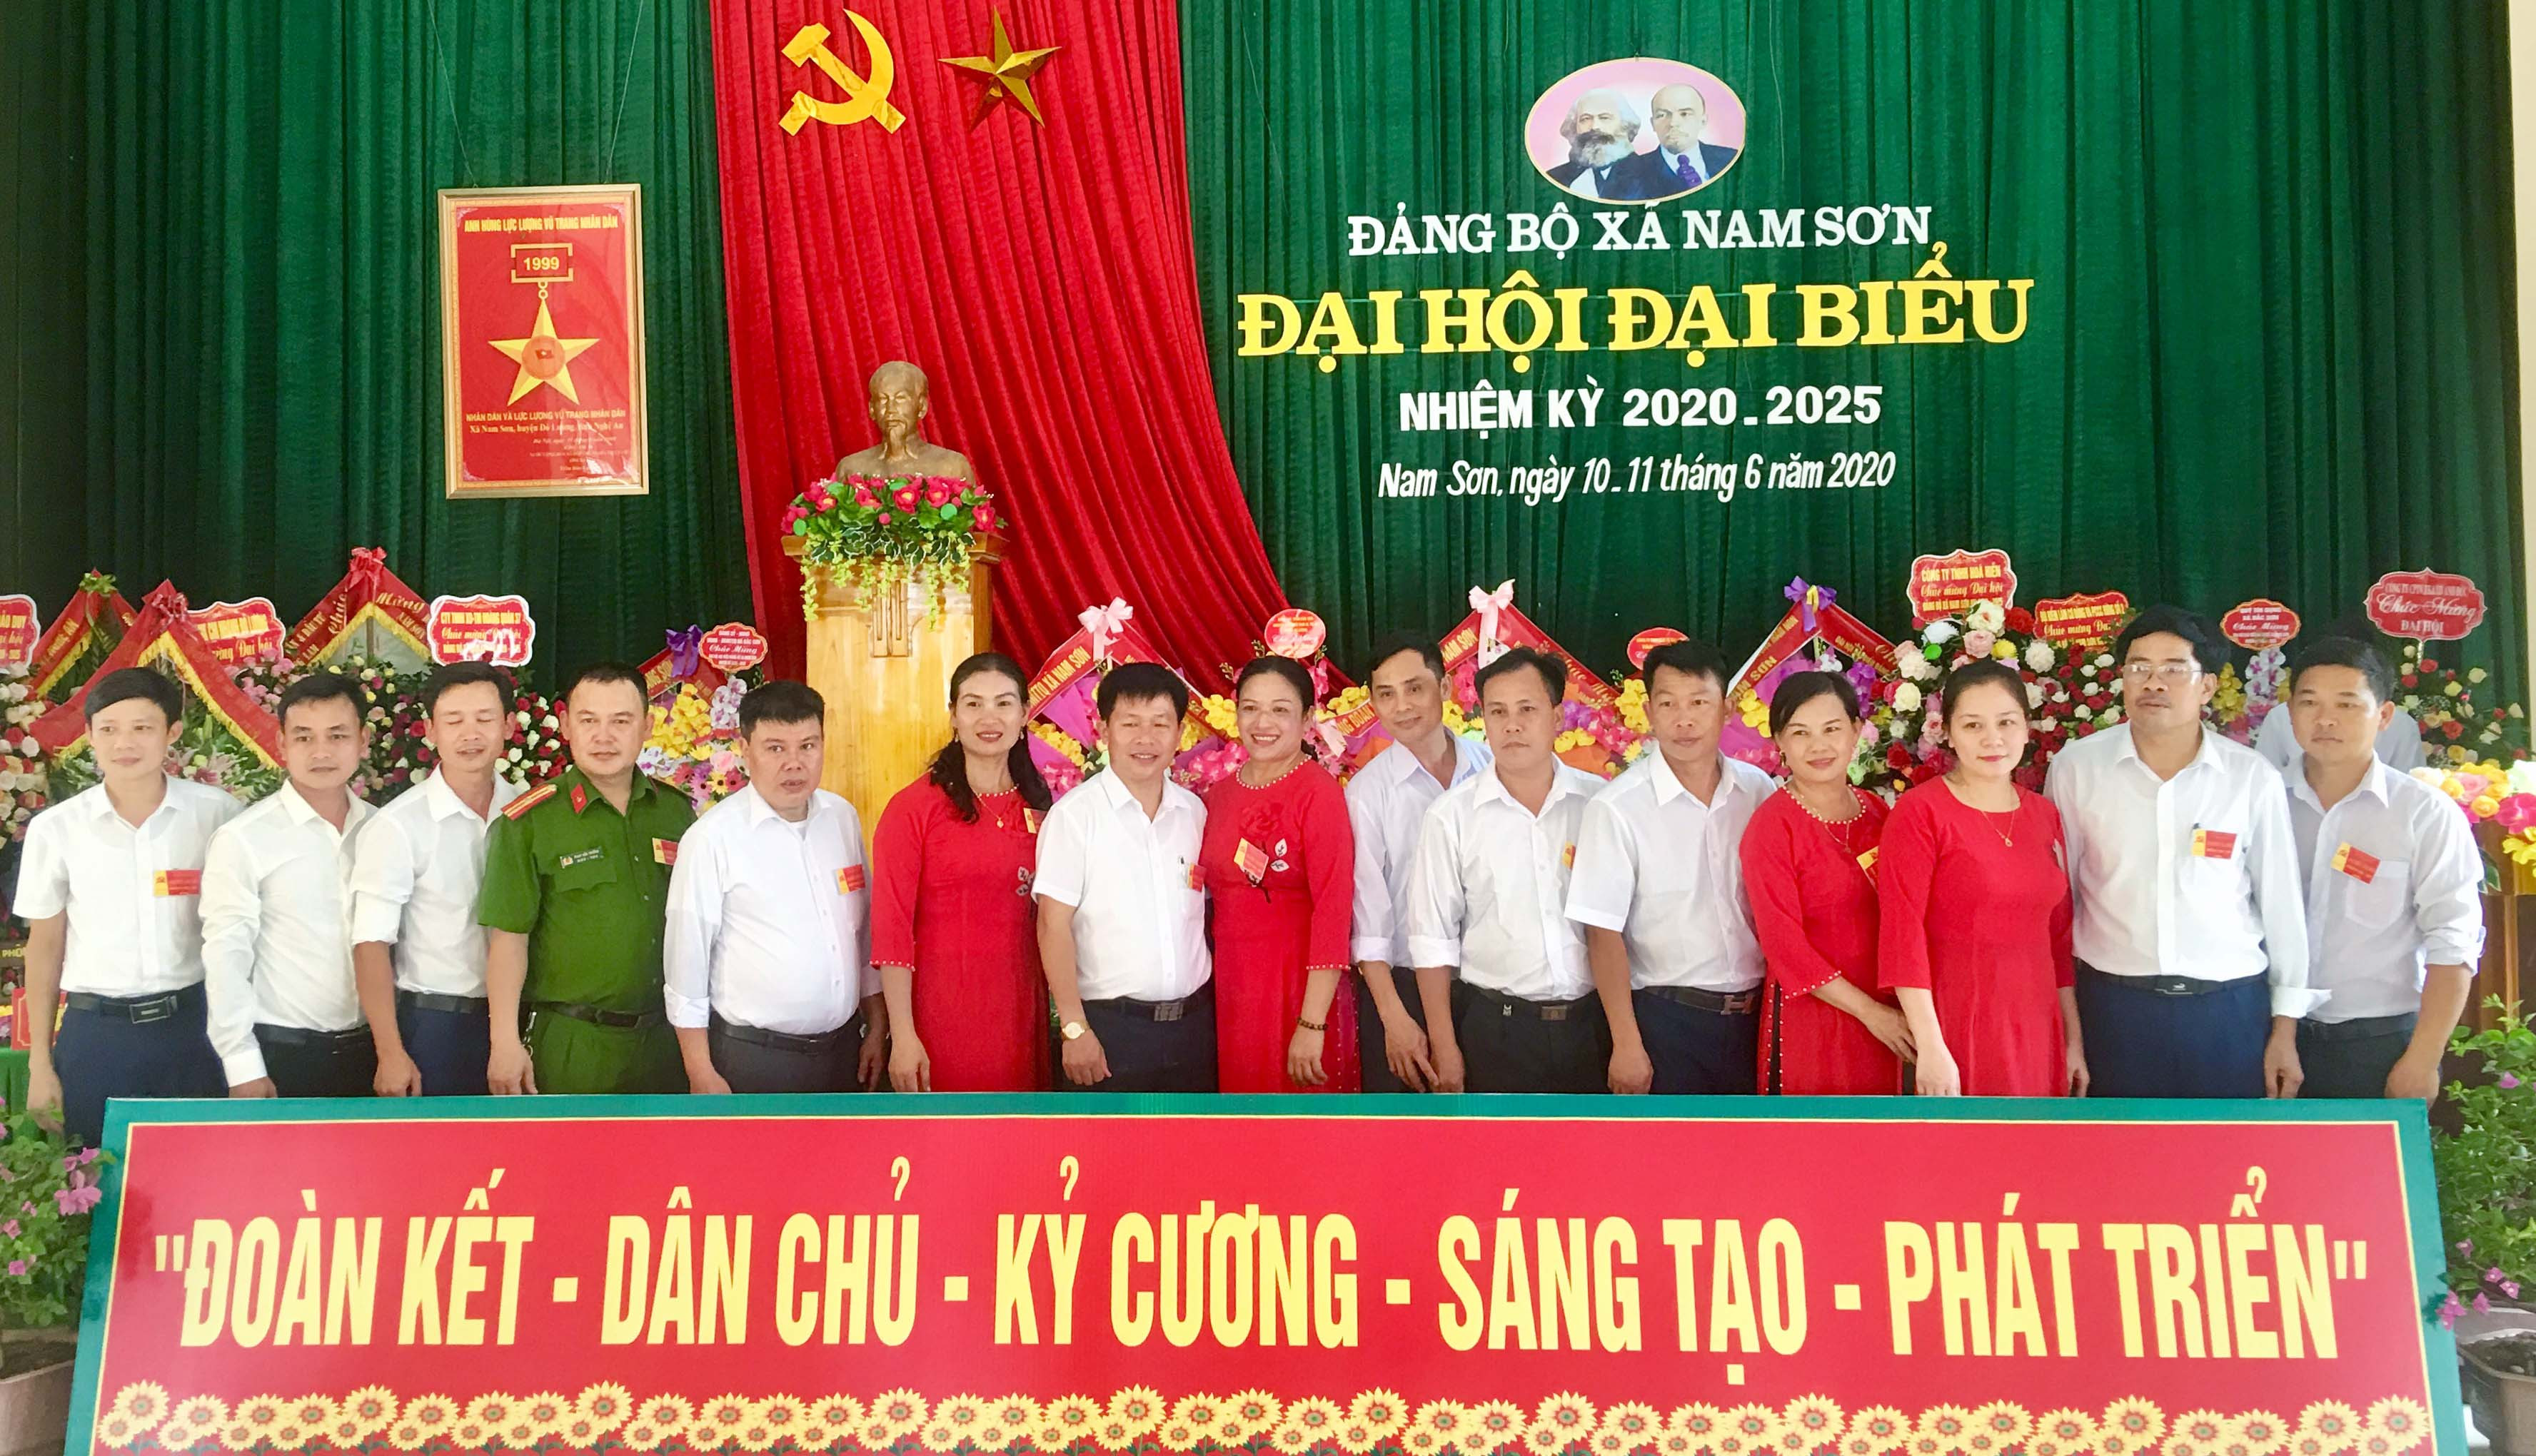 BCH Đảng bộ xã Nam Sơn nhiệm kỳ 2020- 2025 ra mắt nhận nhiệm vụ